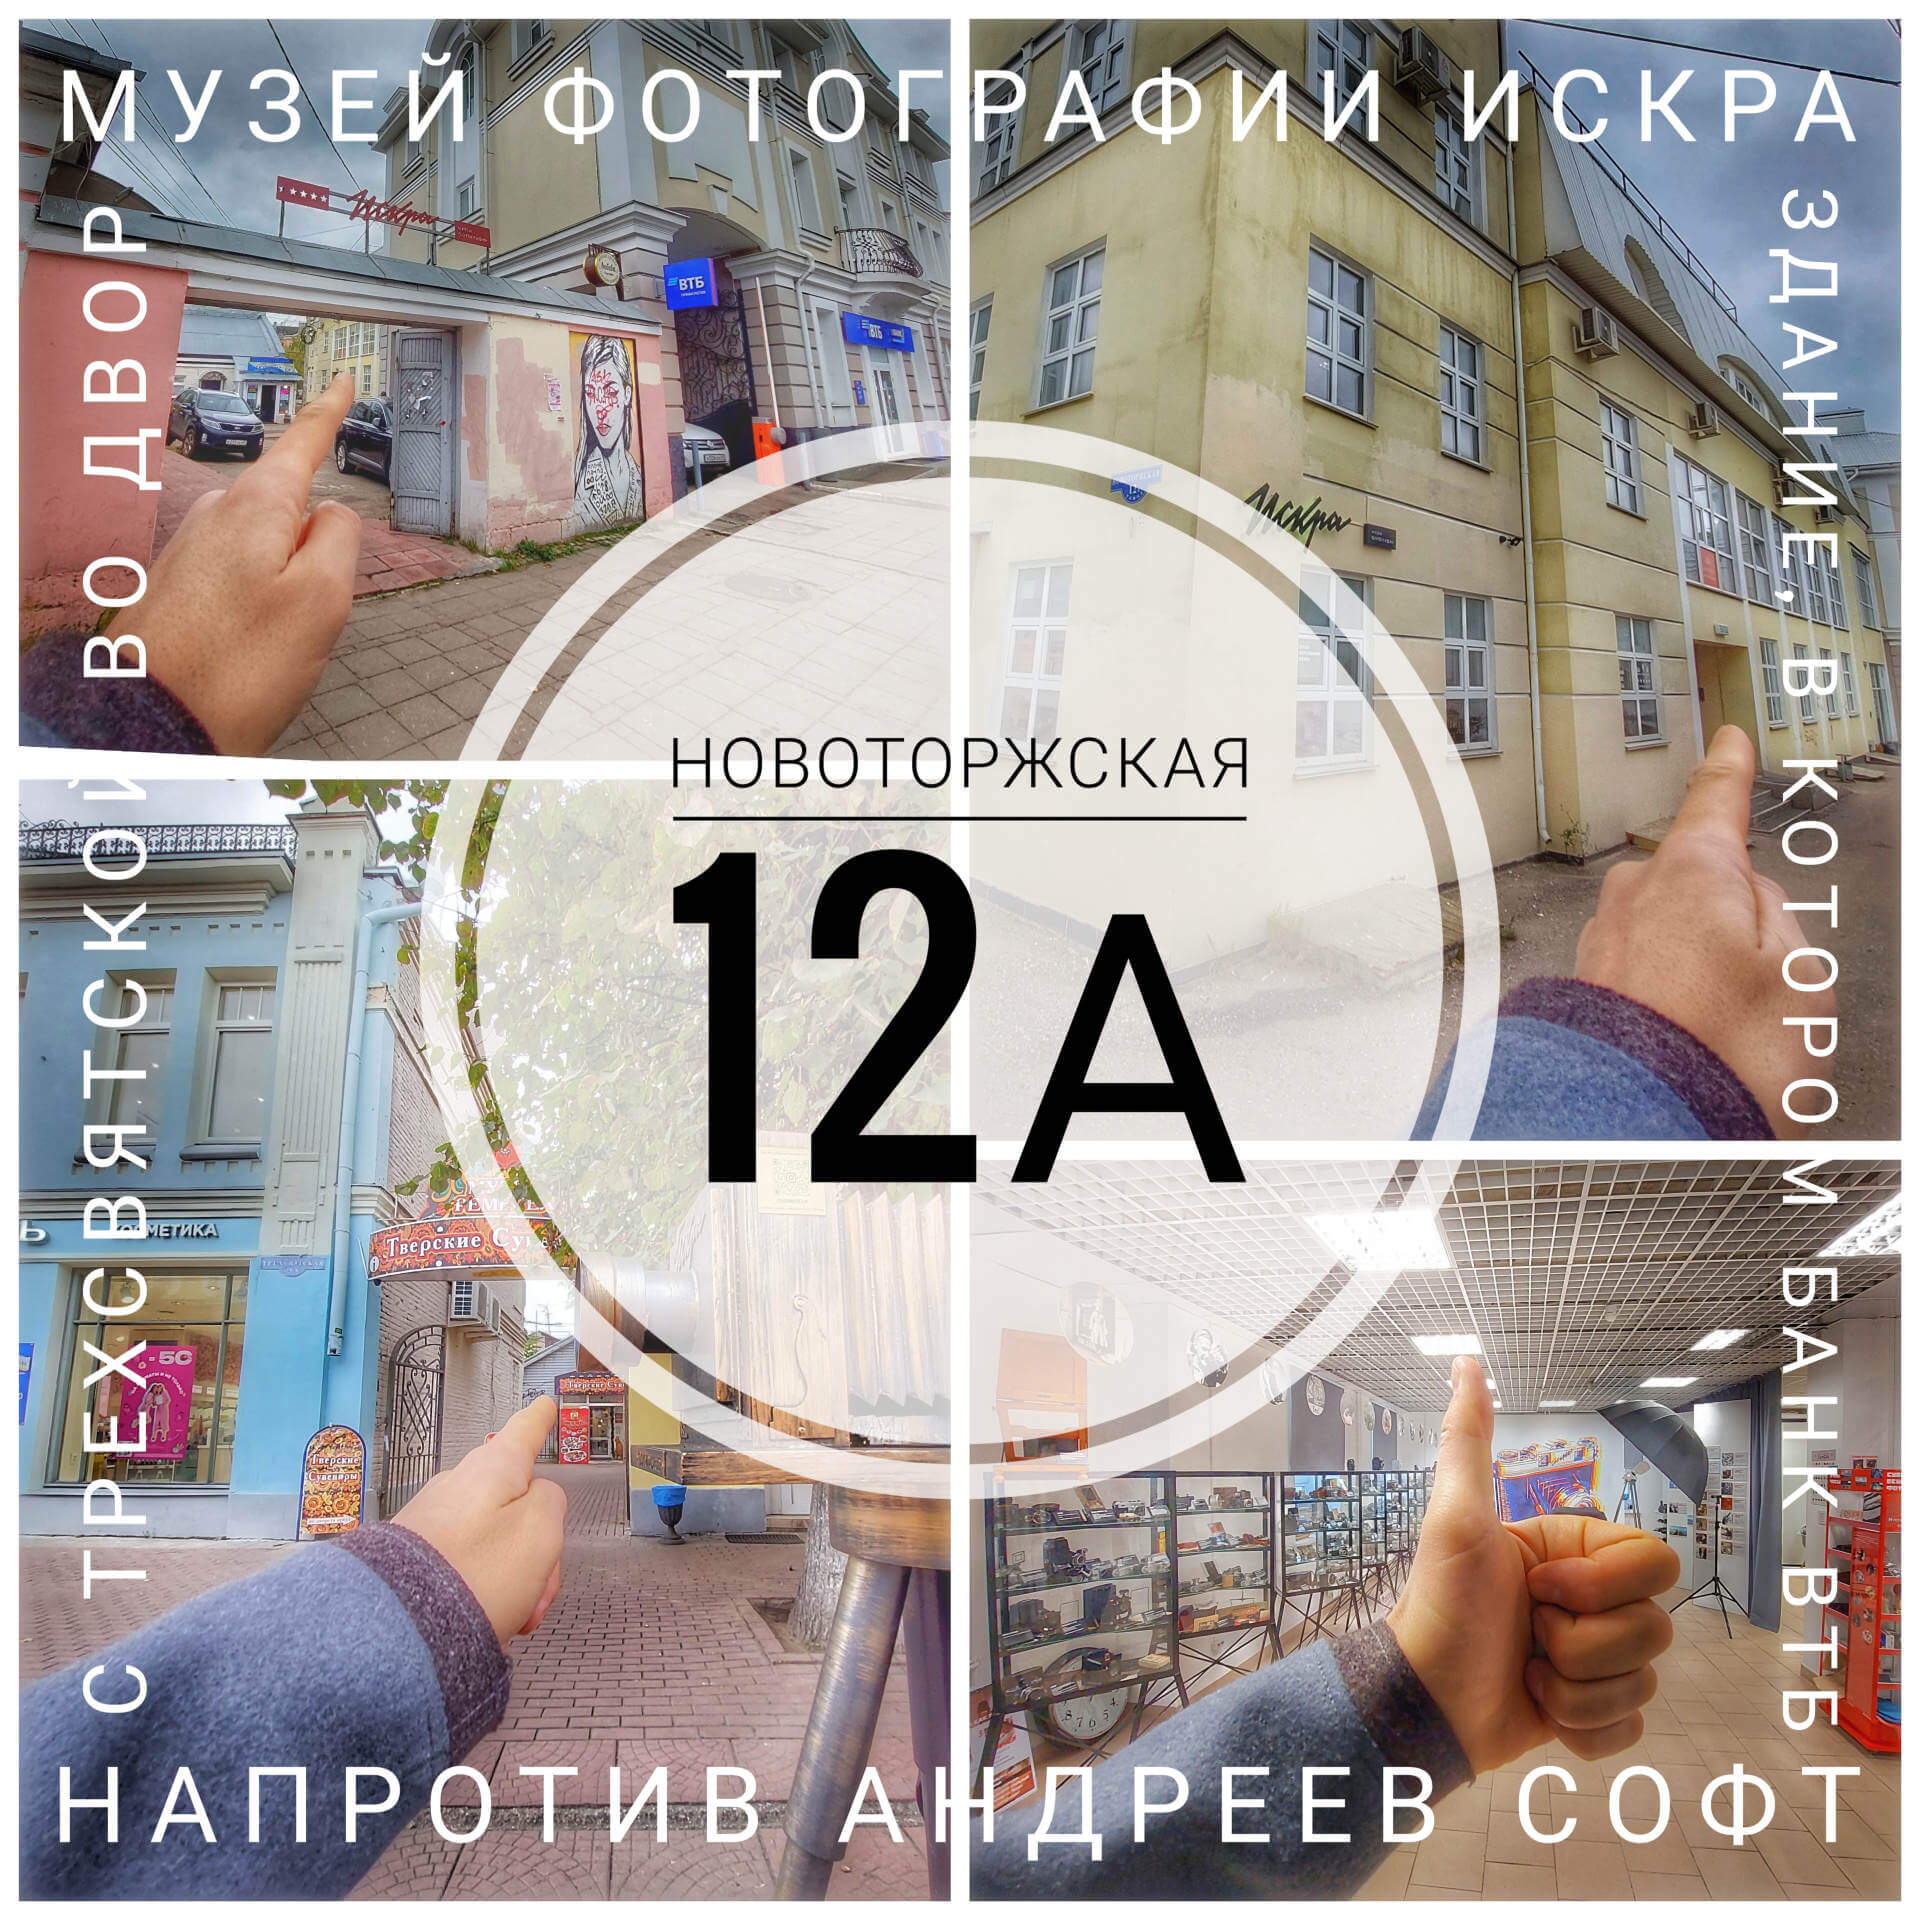 Адрес Новаторская 12А как пройти к музею фотографии Искра в Твери 